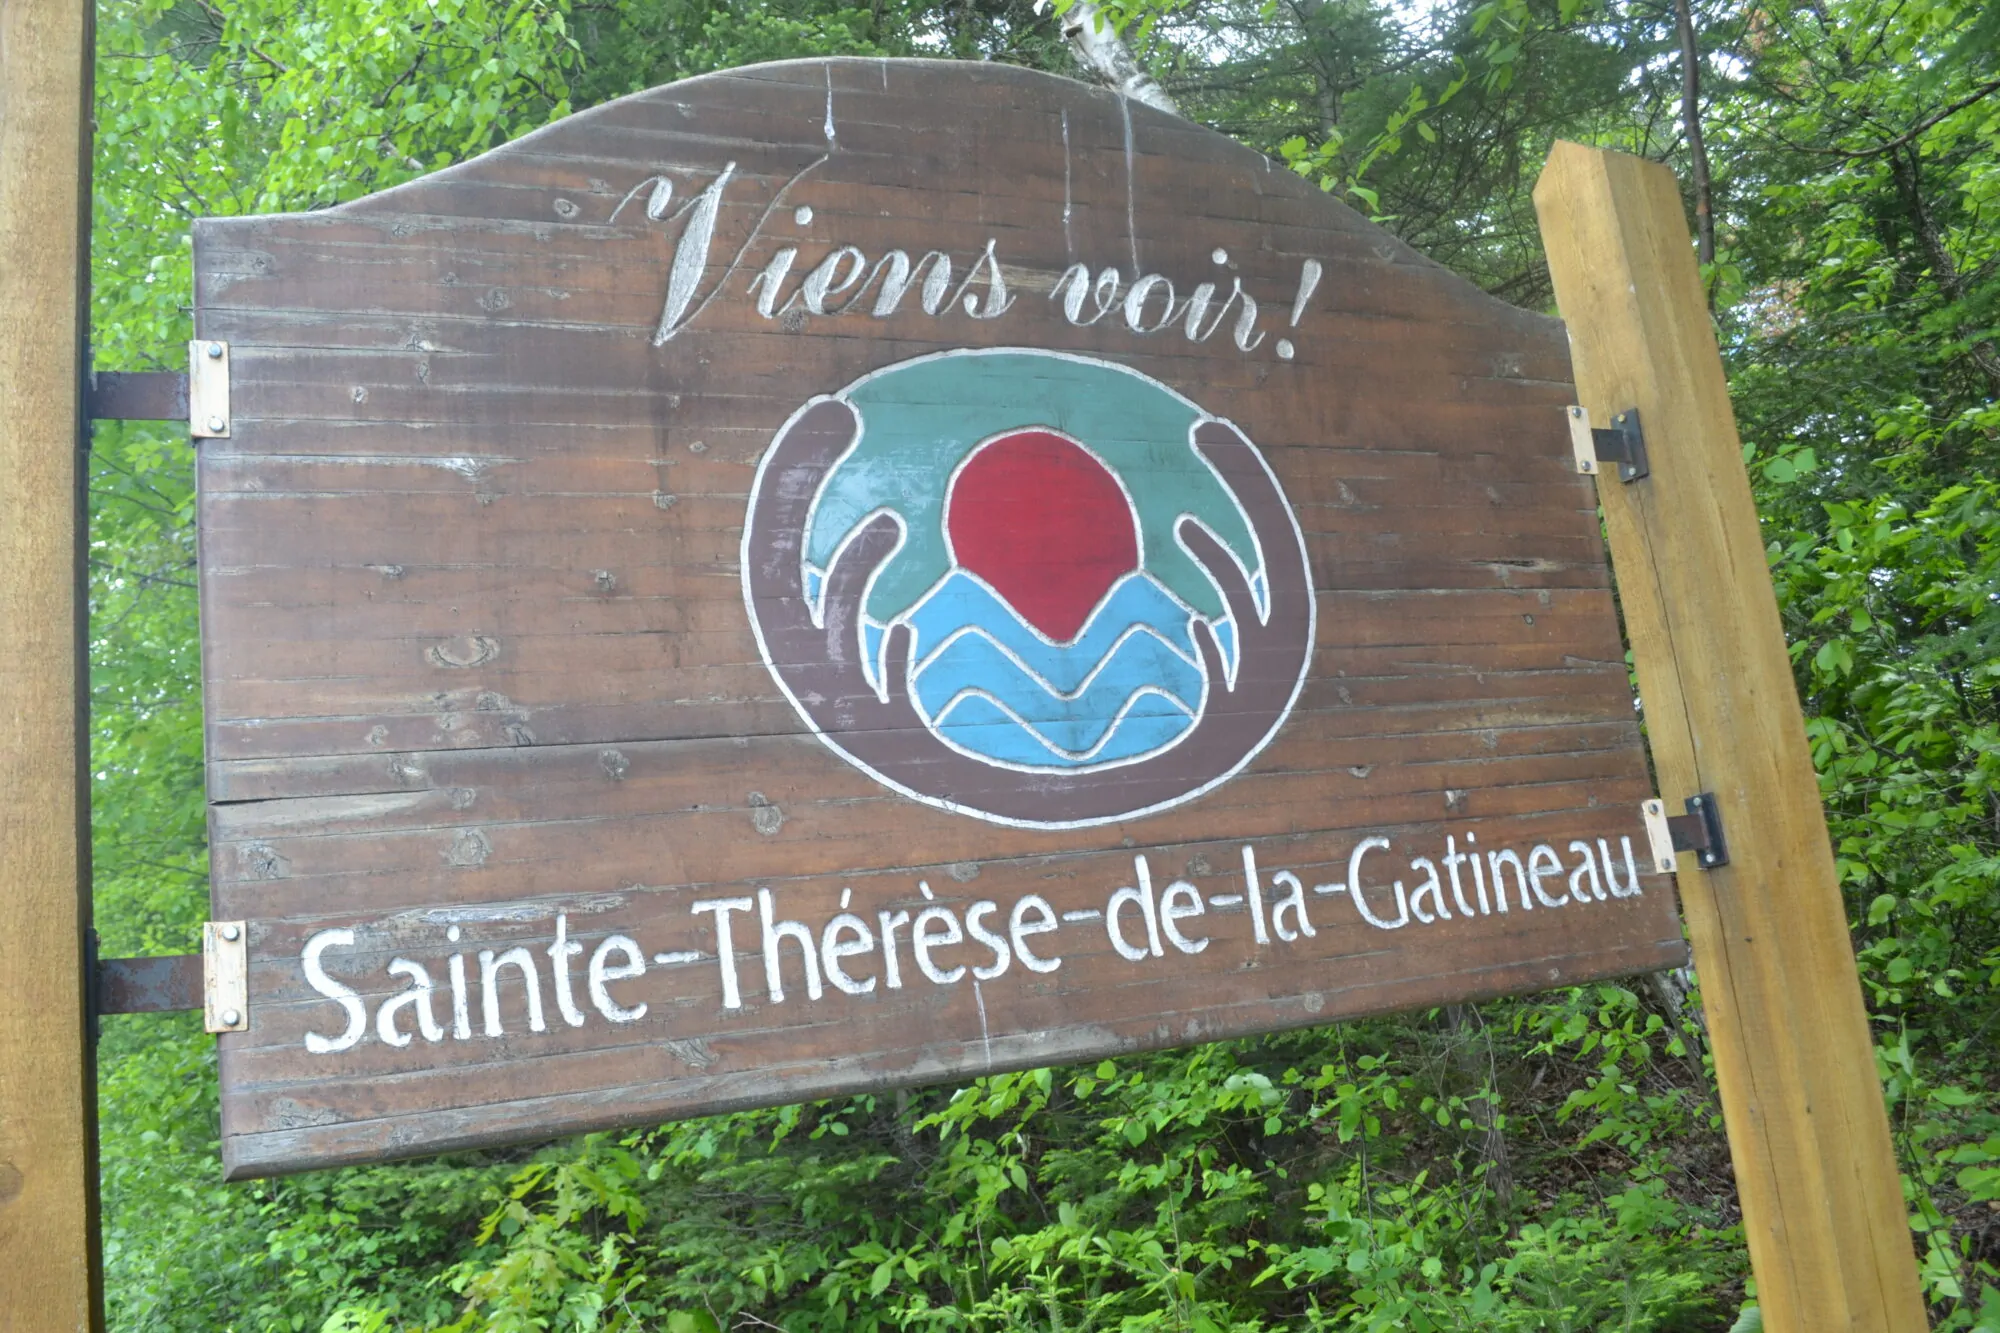 Sainte Therese de la Gatineau